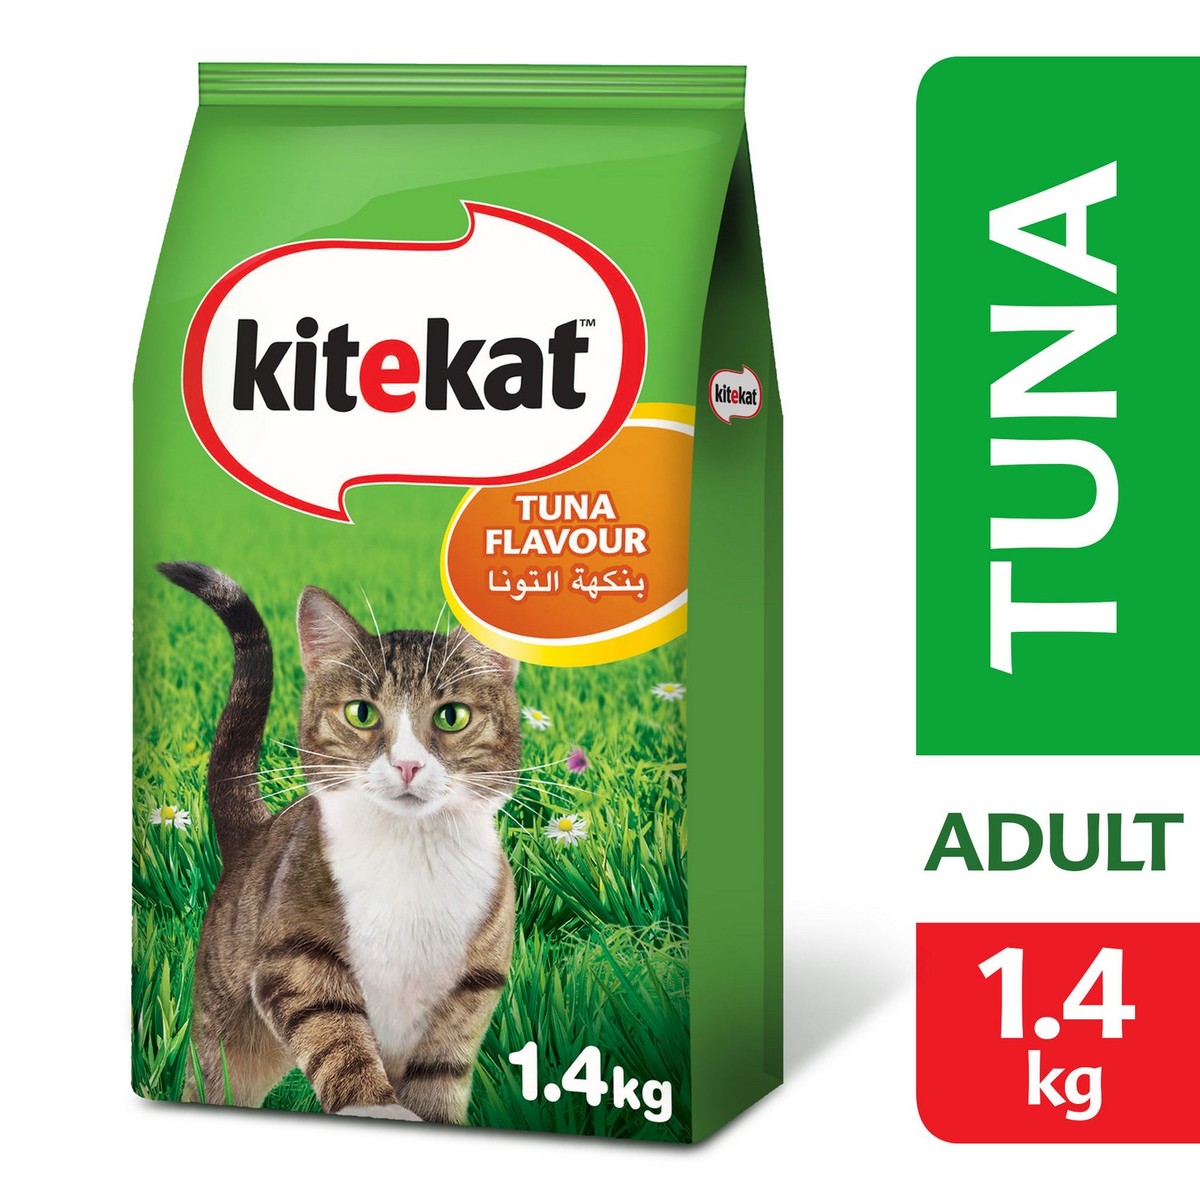 Kitekat Tuna Dry Cat Food 1.4kg